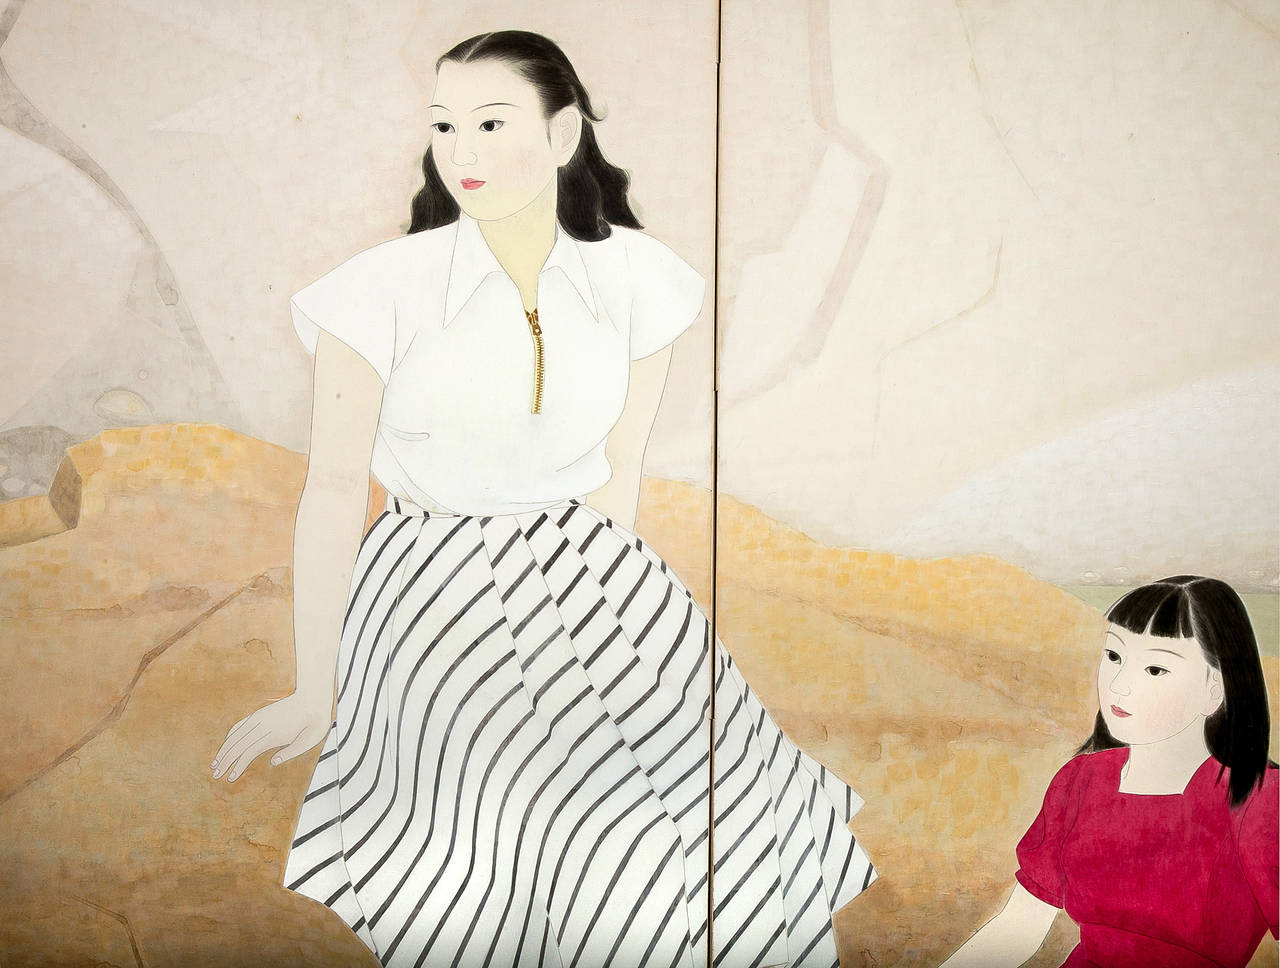 Japanischer Zwei-Panel-Bildschirm: Frauen in westlicher Kleidung, Gemälde im Nihonga-Stil von zwei jungen Frauen in westlicher Sommerkleidung, die am Wasser sitzen und sich abkühlen, indem sie ihre Füße ins Wasser halten.  Gemälde aus der Showa-Zeit